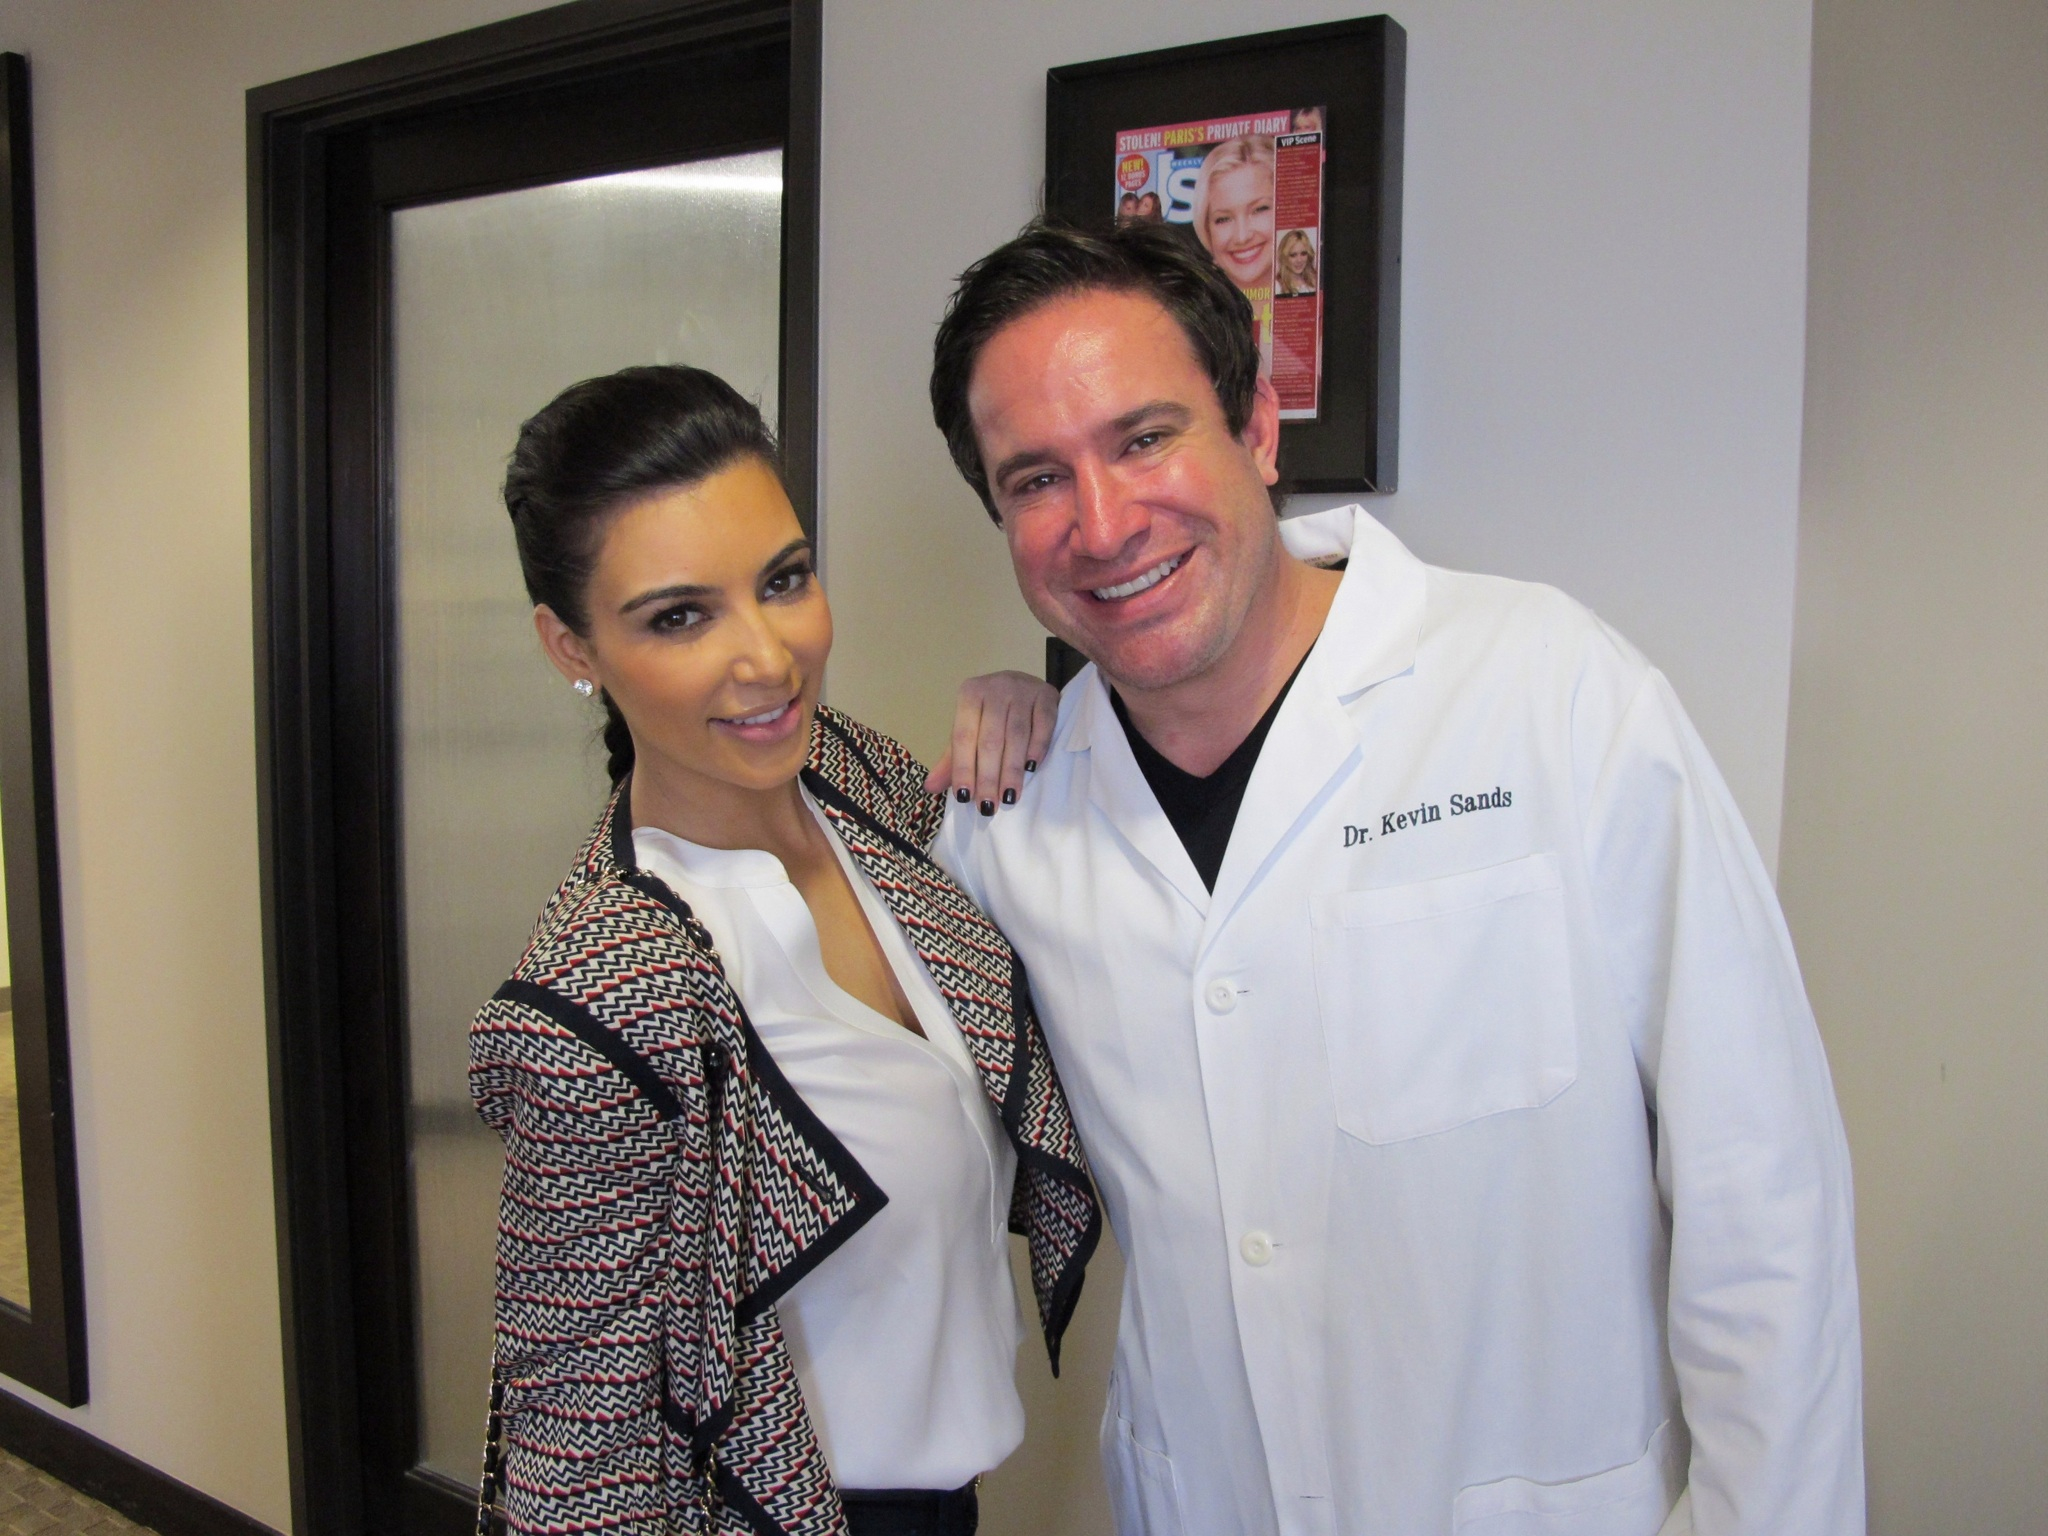 Dr. Kevin Sans with Kim Kardashian